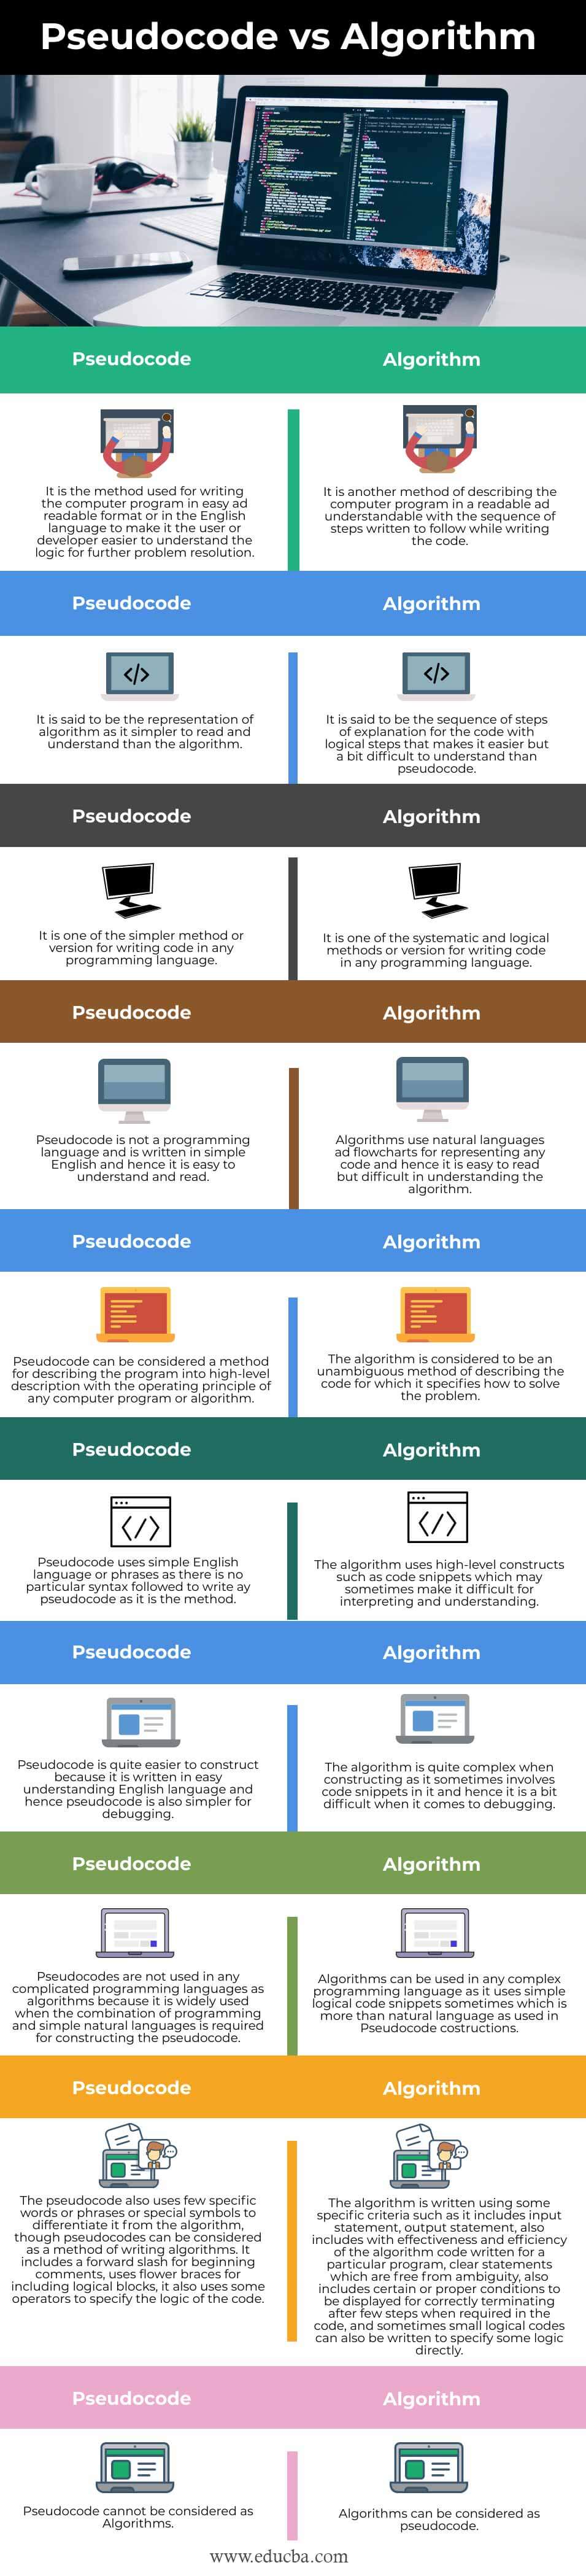 Pseudocode-vs-Algorithm-info